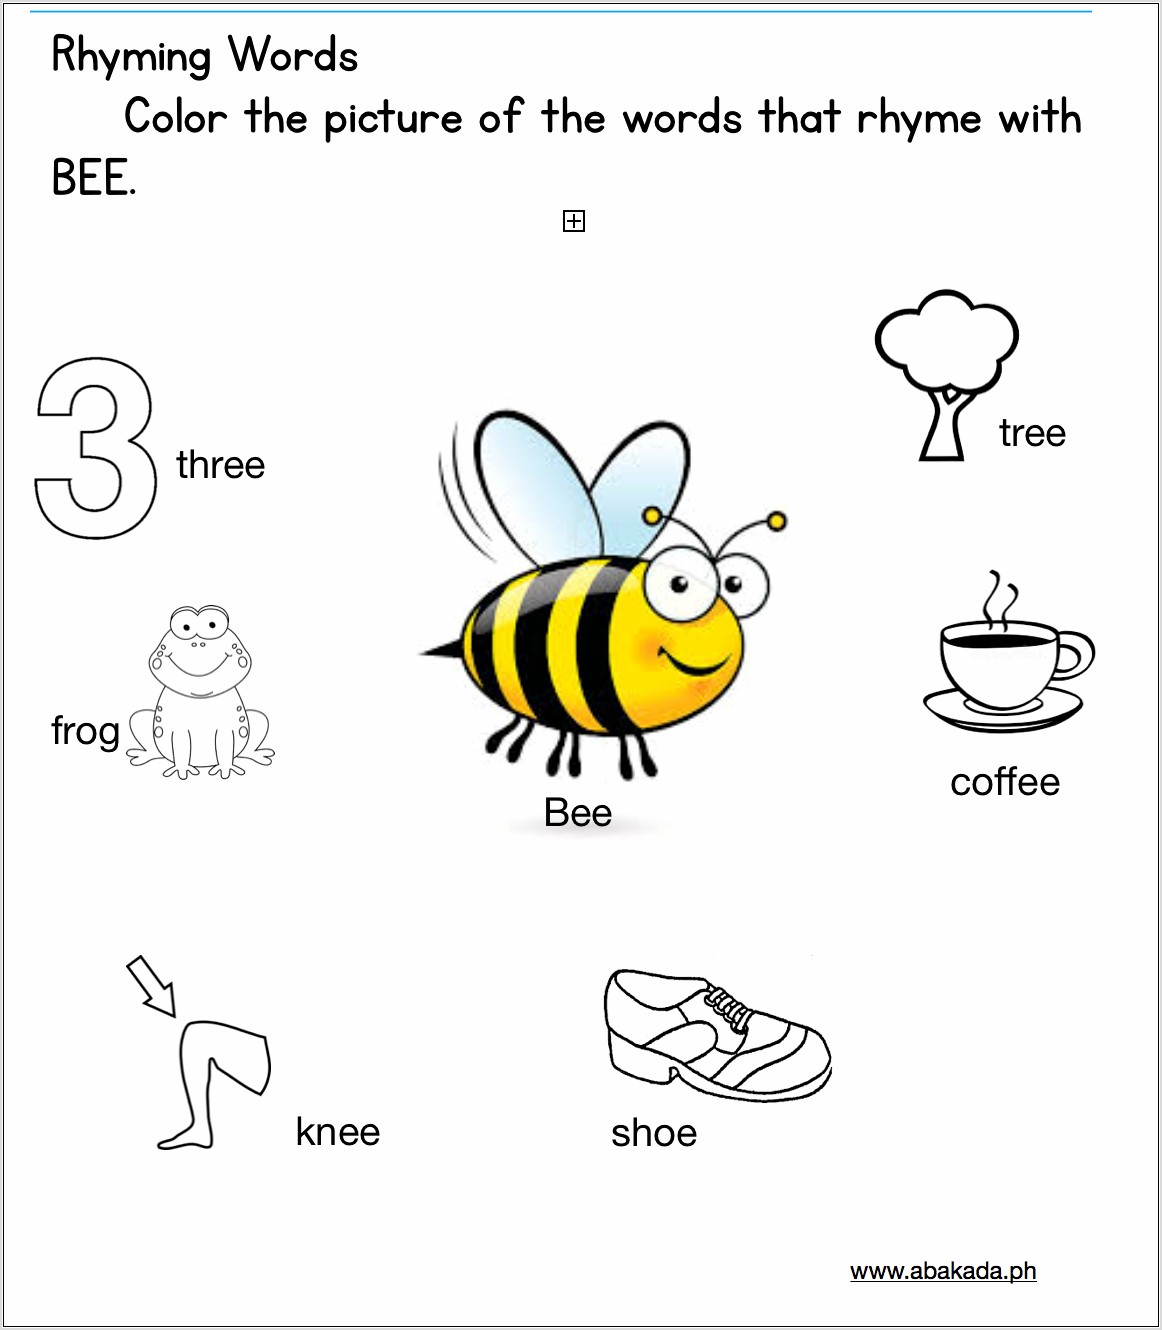 Rhyming Words Worksheet Preschool